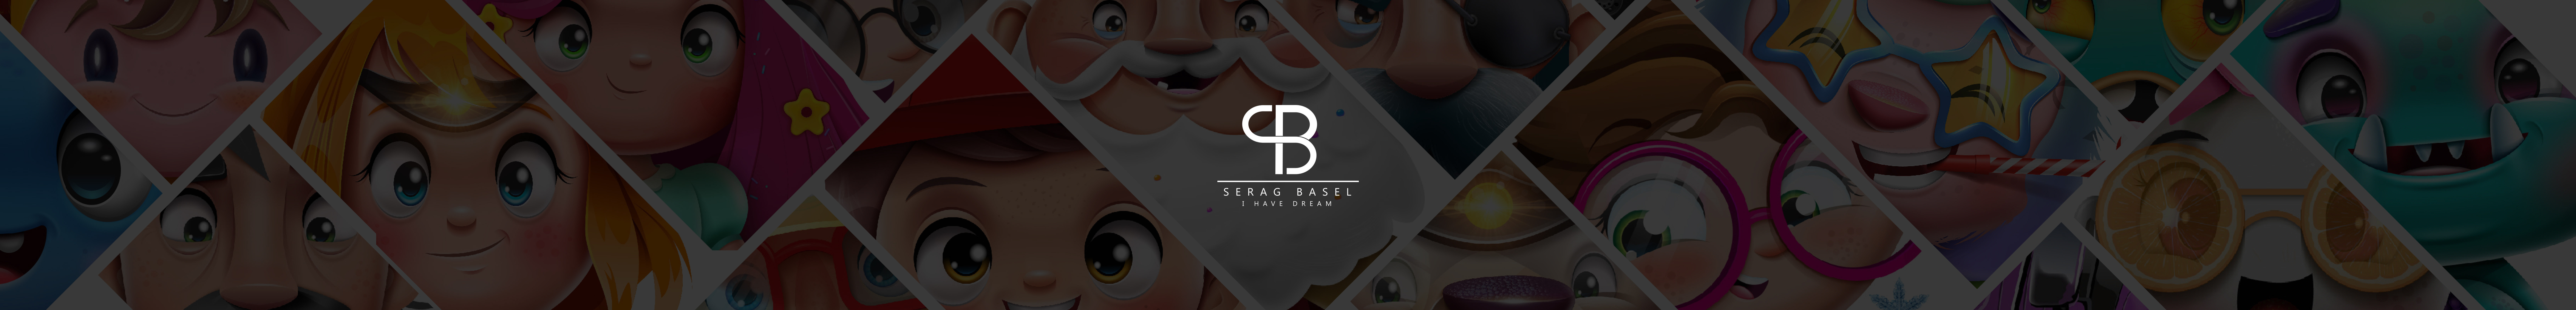 Profil-Banner von serag basel™